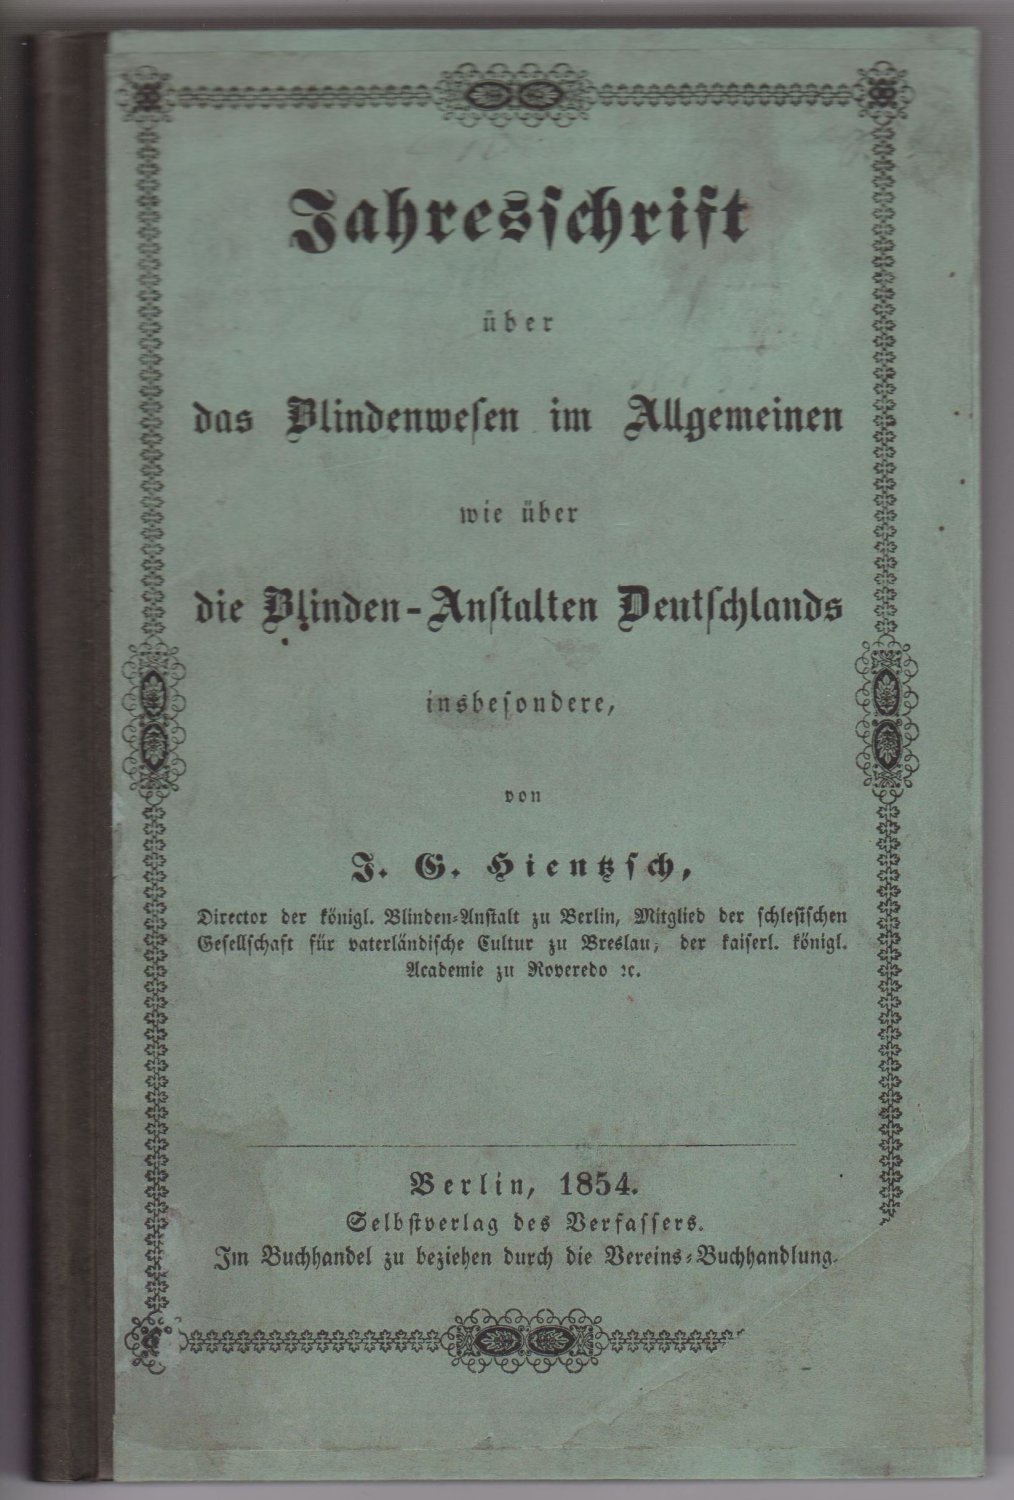 HIENTZSCH, J.G.:  Jahresschrift über das Blindenwesen im Allgemeinen wie über die Blinden-Anstalten Deutschlands. 